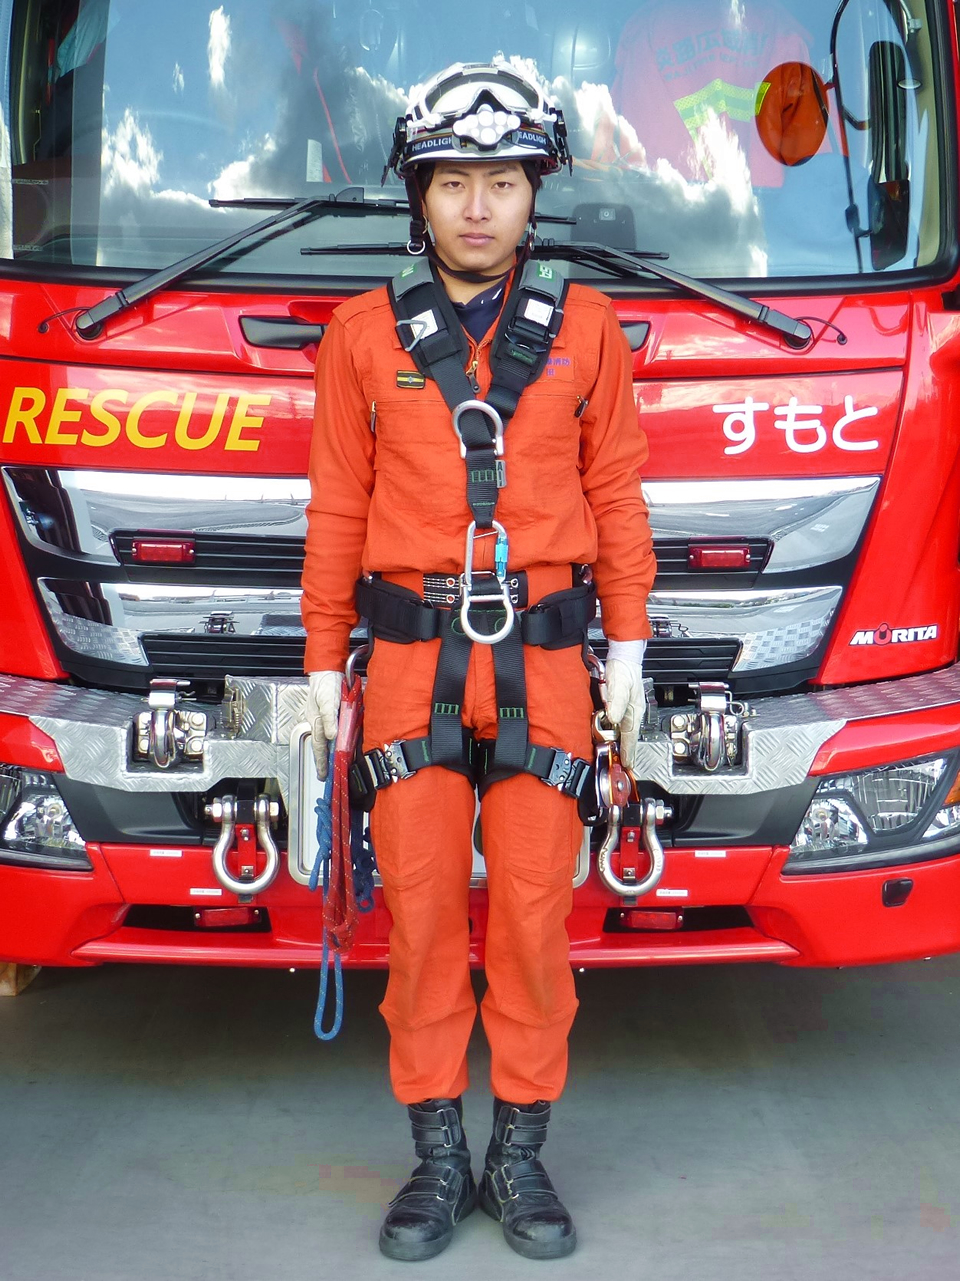 消防マニア 救助救急 オレンジトップス 活動 防火 衣 服 レスキュー ワッペン早い者勝ちです